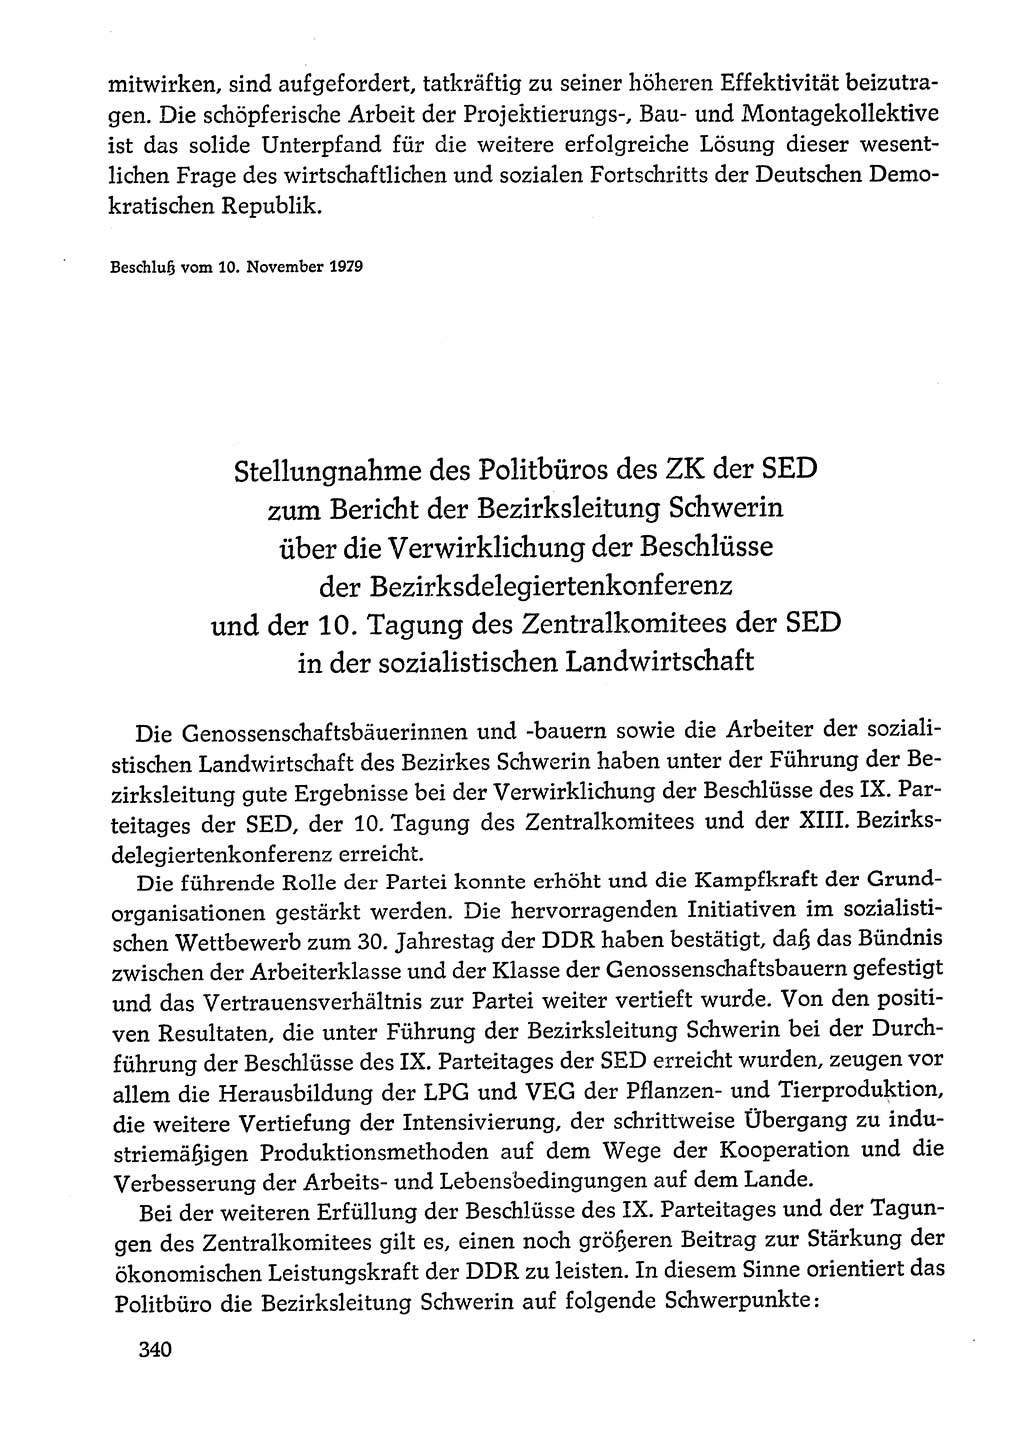 Dokumente der Sozialistischen Einheitspartei Deutschlands (SED) [Deutsche Demokratische Republik (DDR)] 1978-1979, Seite 340 (Dok. SED DDR 1978-1979, S. 340)